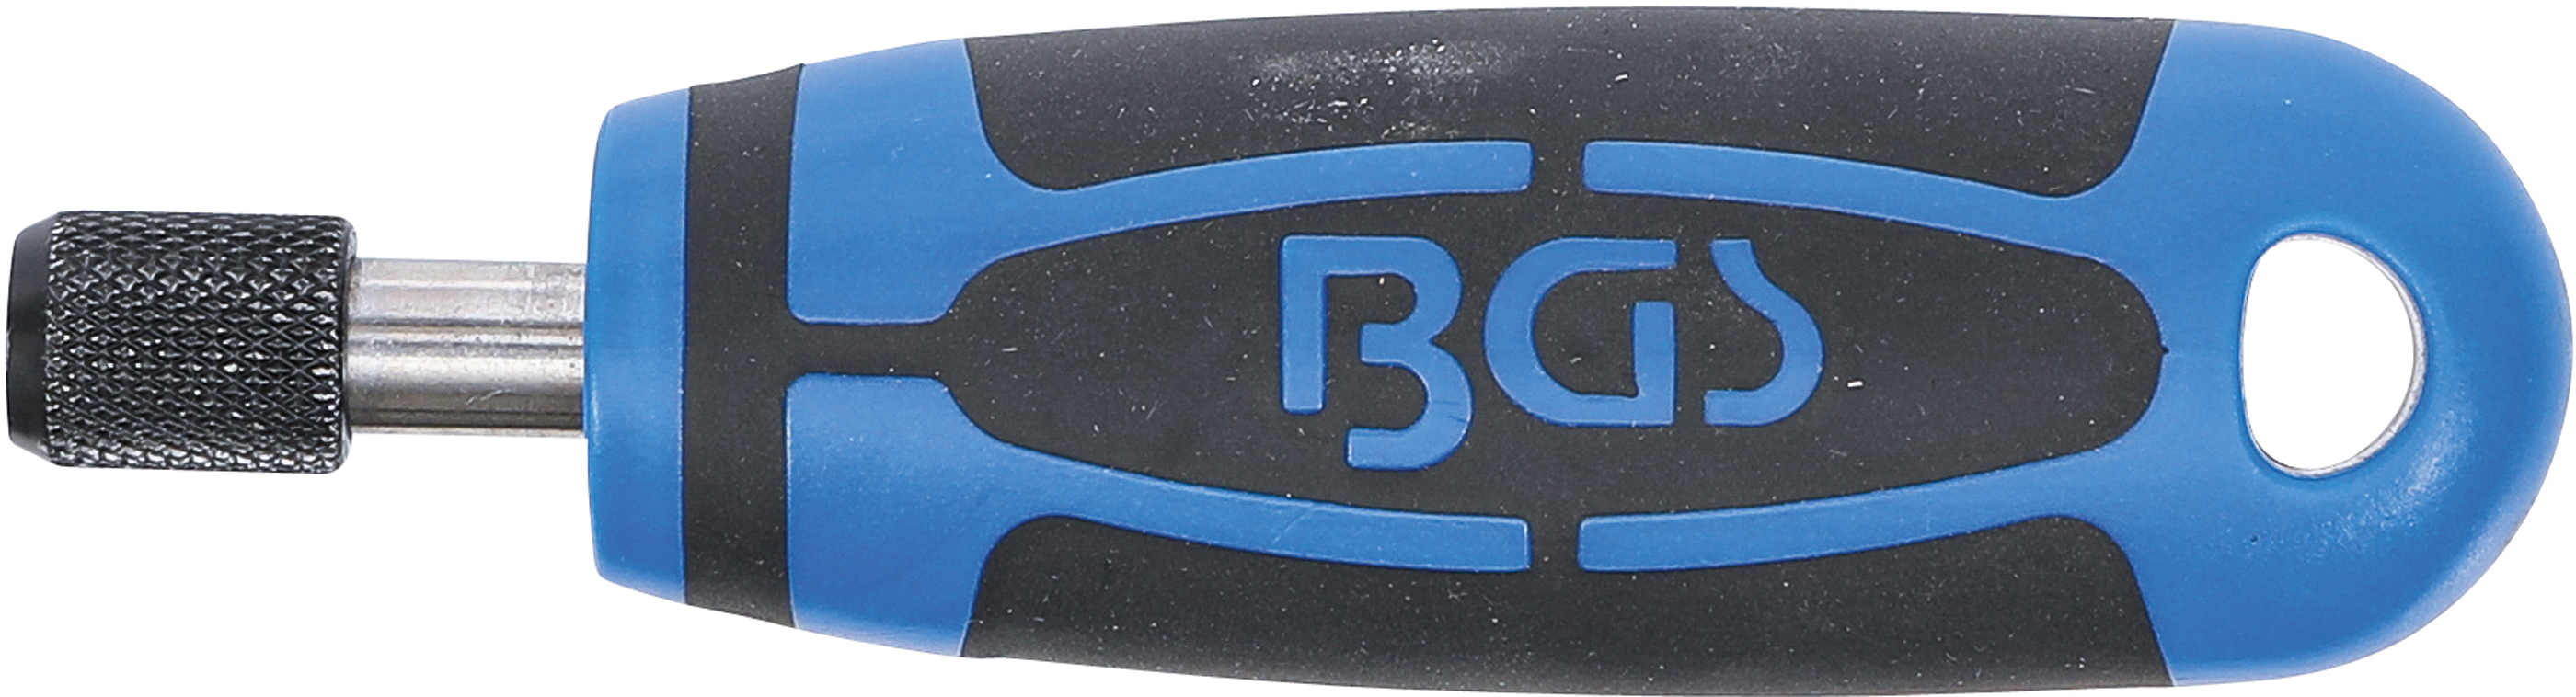 BGS Handgriff | für Bits, Bürsten, etc. | Abtrieb Innensechskant 6,3 mm (1/4")